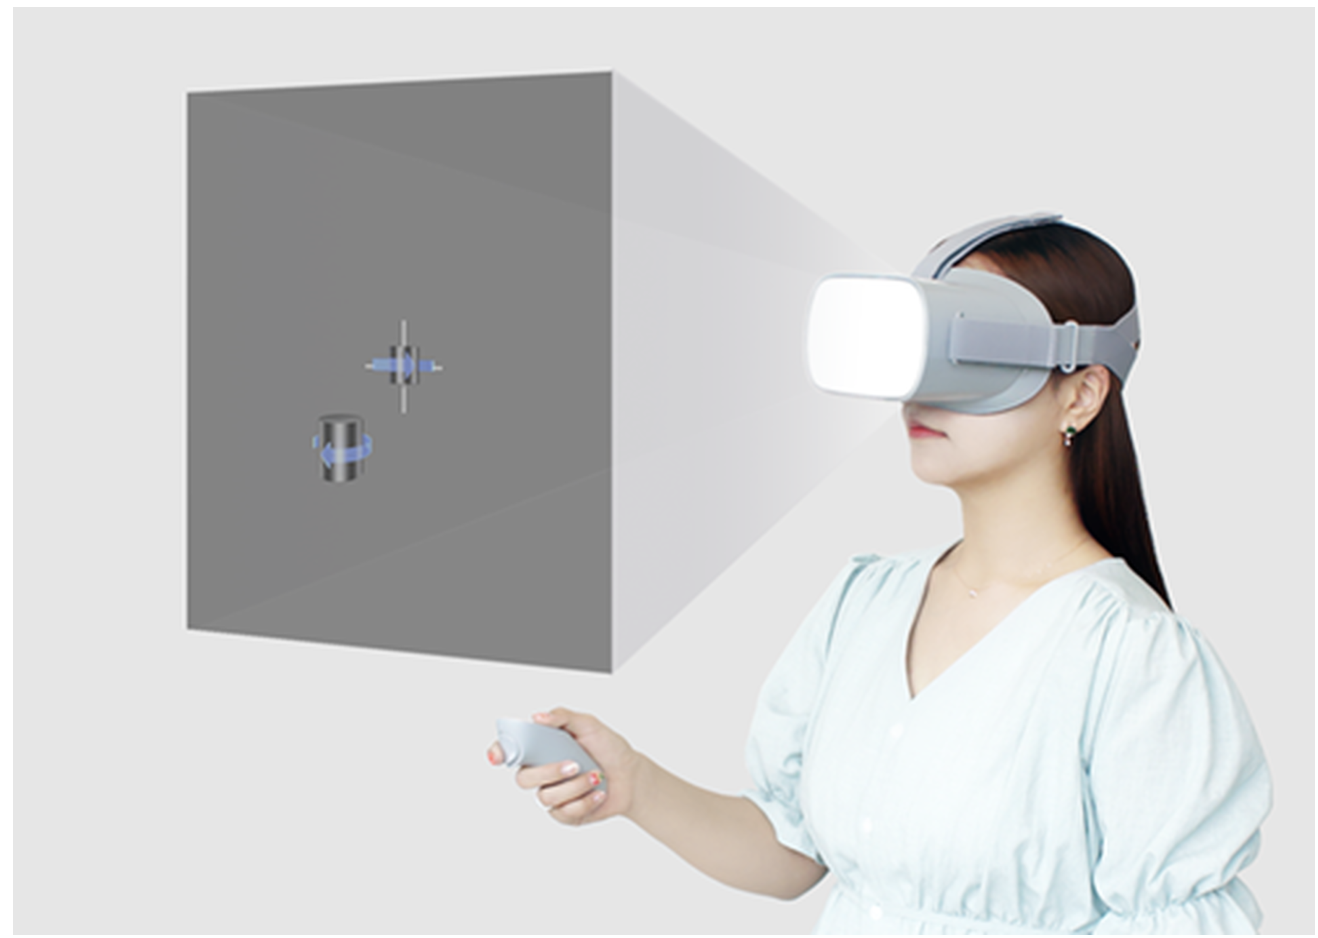 用 VR 技术治疗由脑部损伤而导致的视觉障碍，韩国初创公司「Nunaps」获 420 万美元 A 轮融资